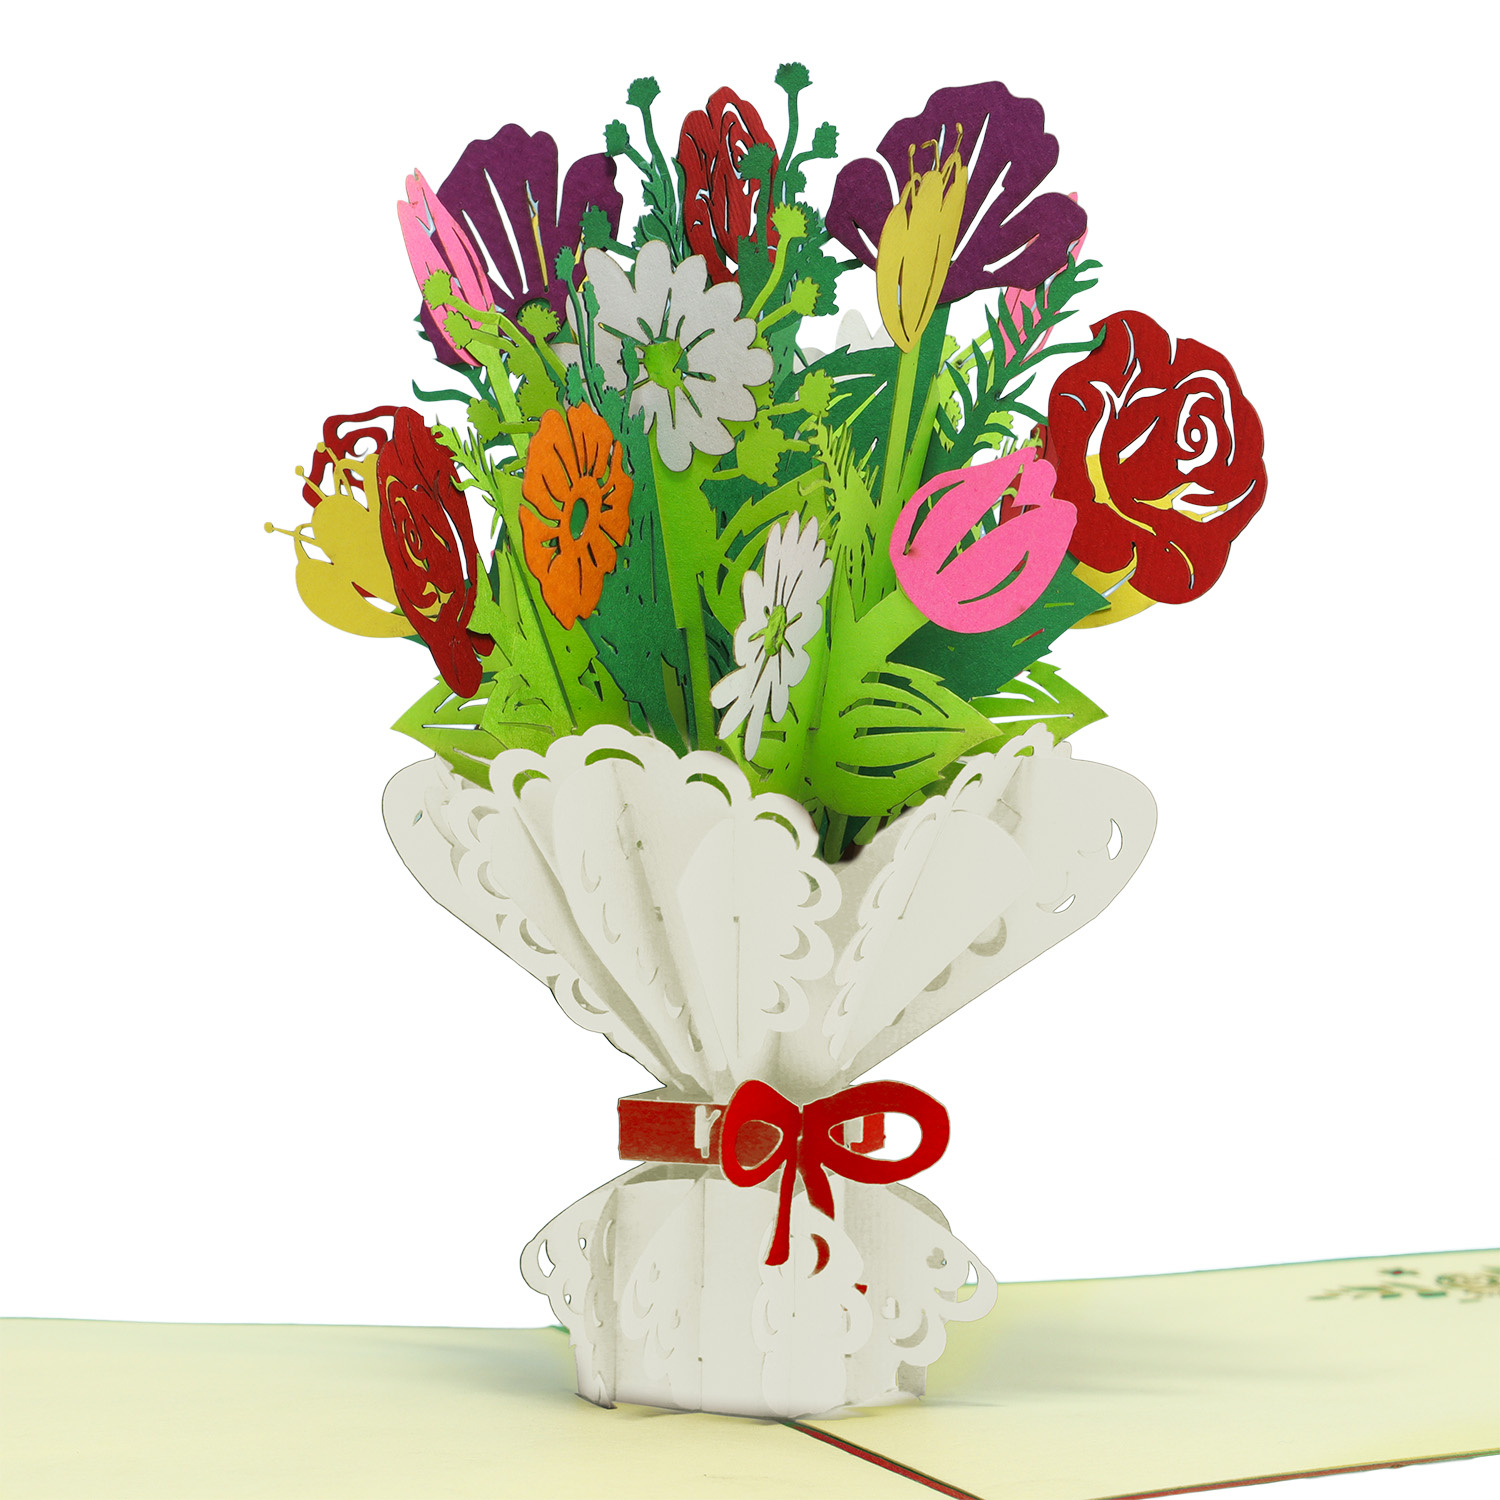 LINPOPUP Pop Up Karte Blumen, Blumenkarten,Blumenstrauß Pop-Up, Grußkarten, Klappkarte, Muttertagskarte, Abschied, Geburtstagskarte, Gute Besserung, Blumenstrauß, LIN17768, LINPopUp®, N508